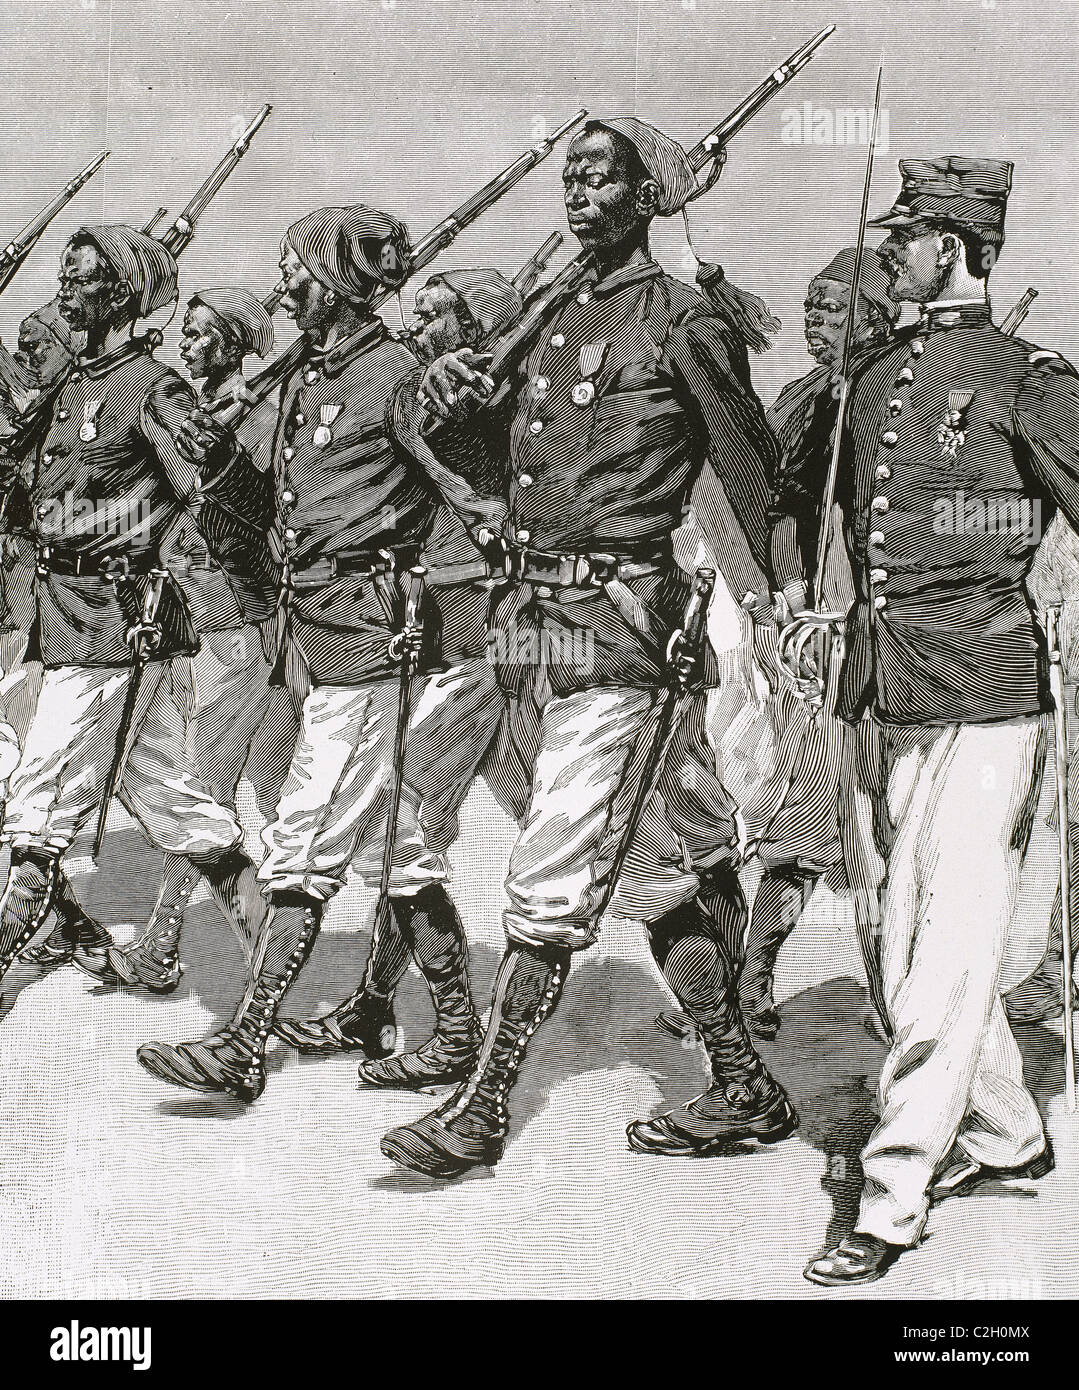 Sénégalais Vorfall (1898). Marchand Expedition. Senegalesische Soldaten mit Major Marchand. Gravur. Stockfoto